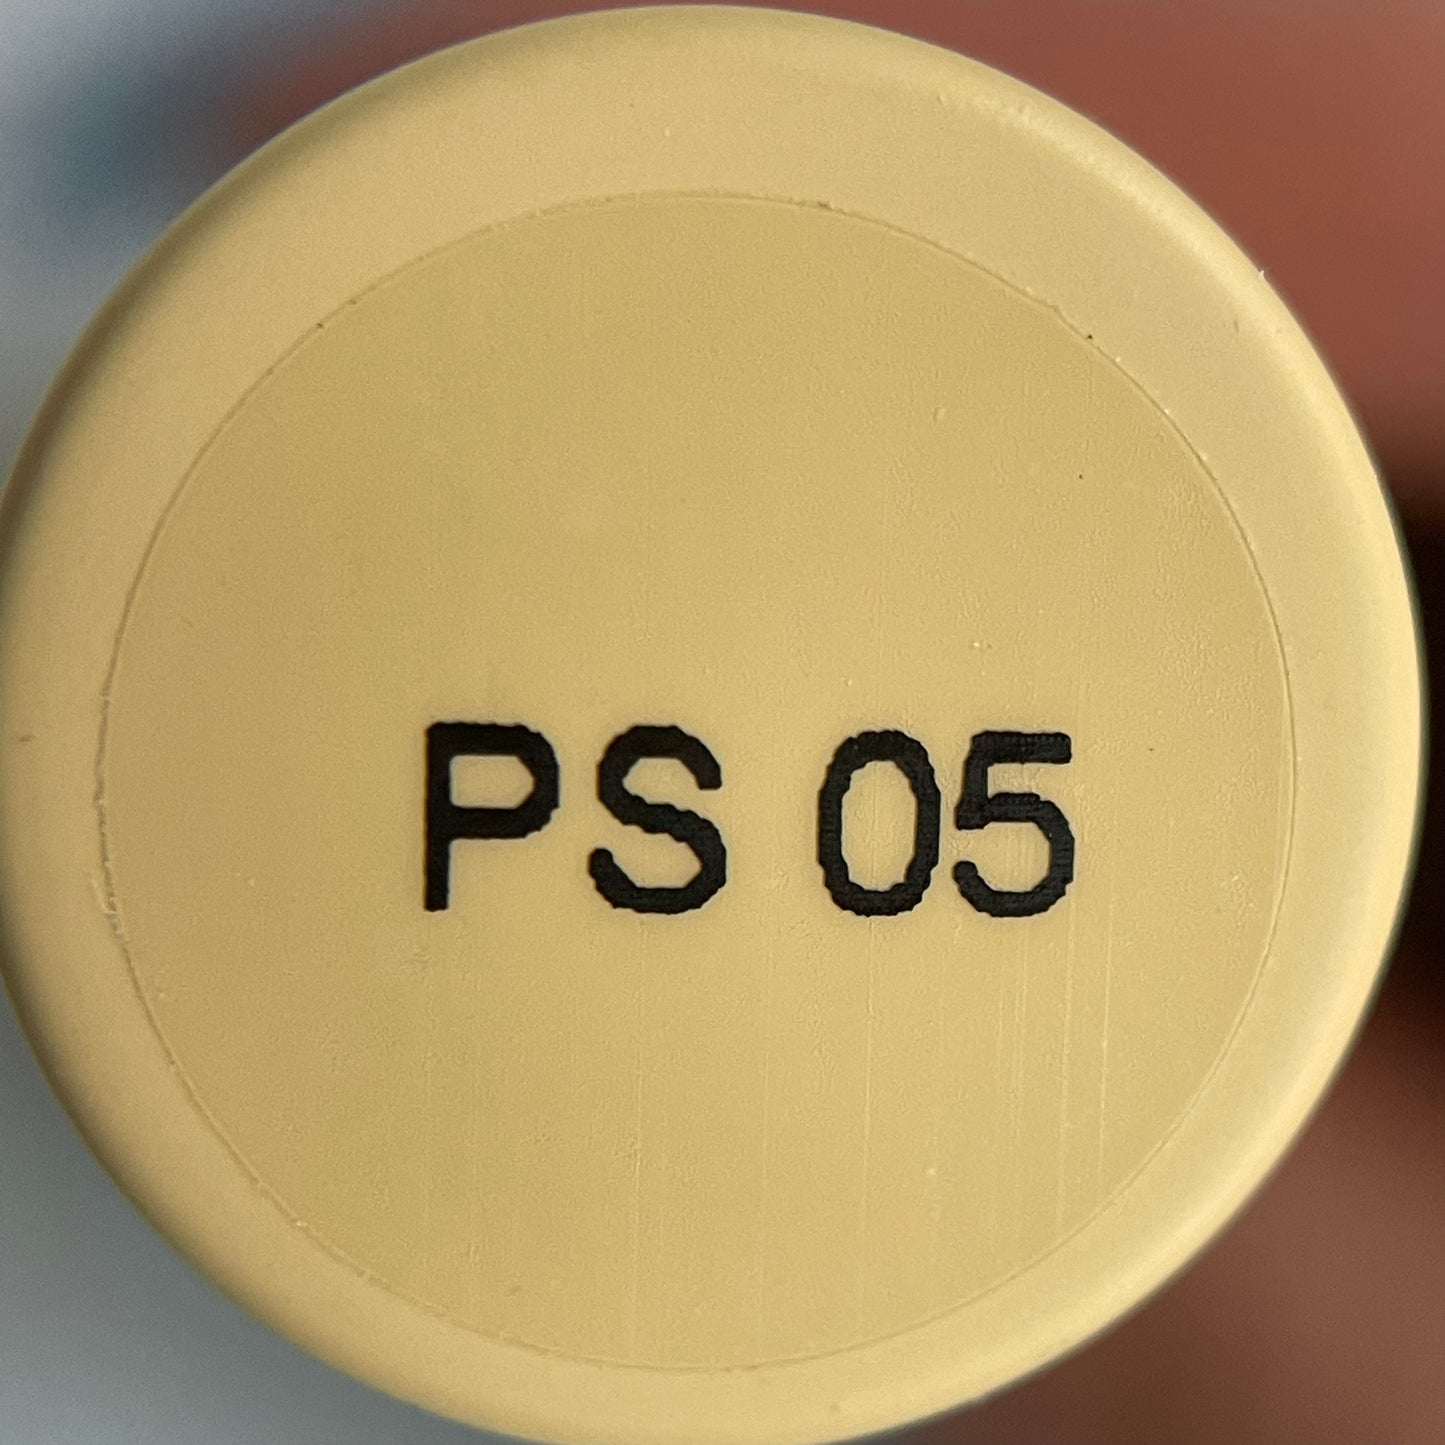 PLIY Gel Color PS05 (10 g)